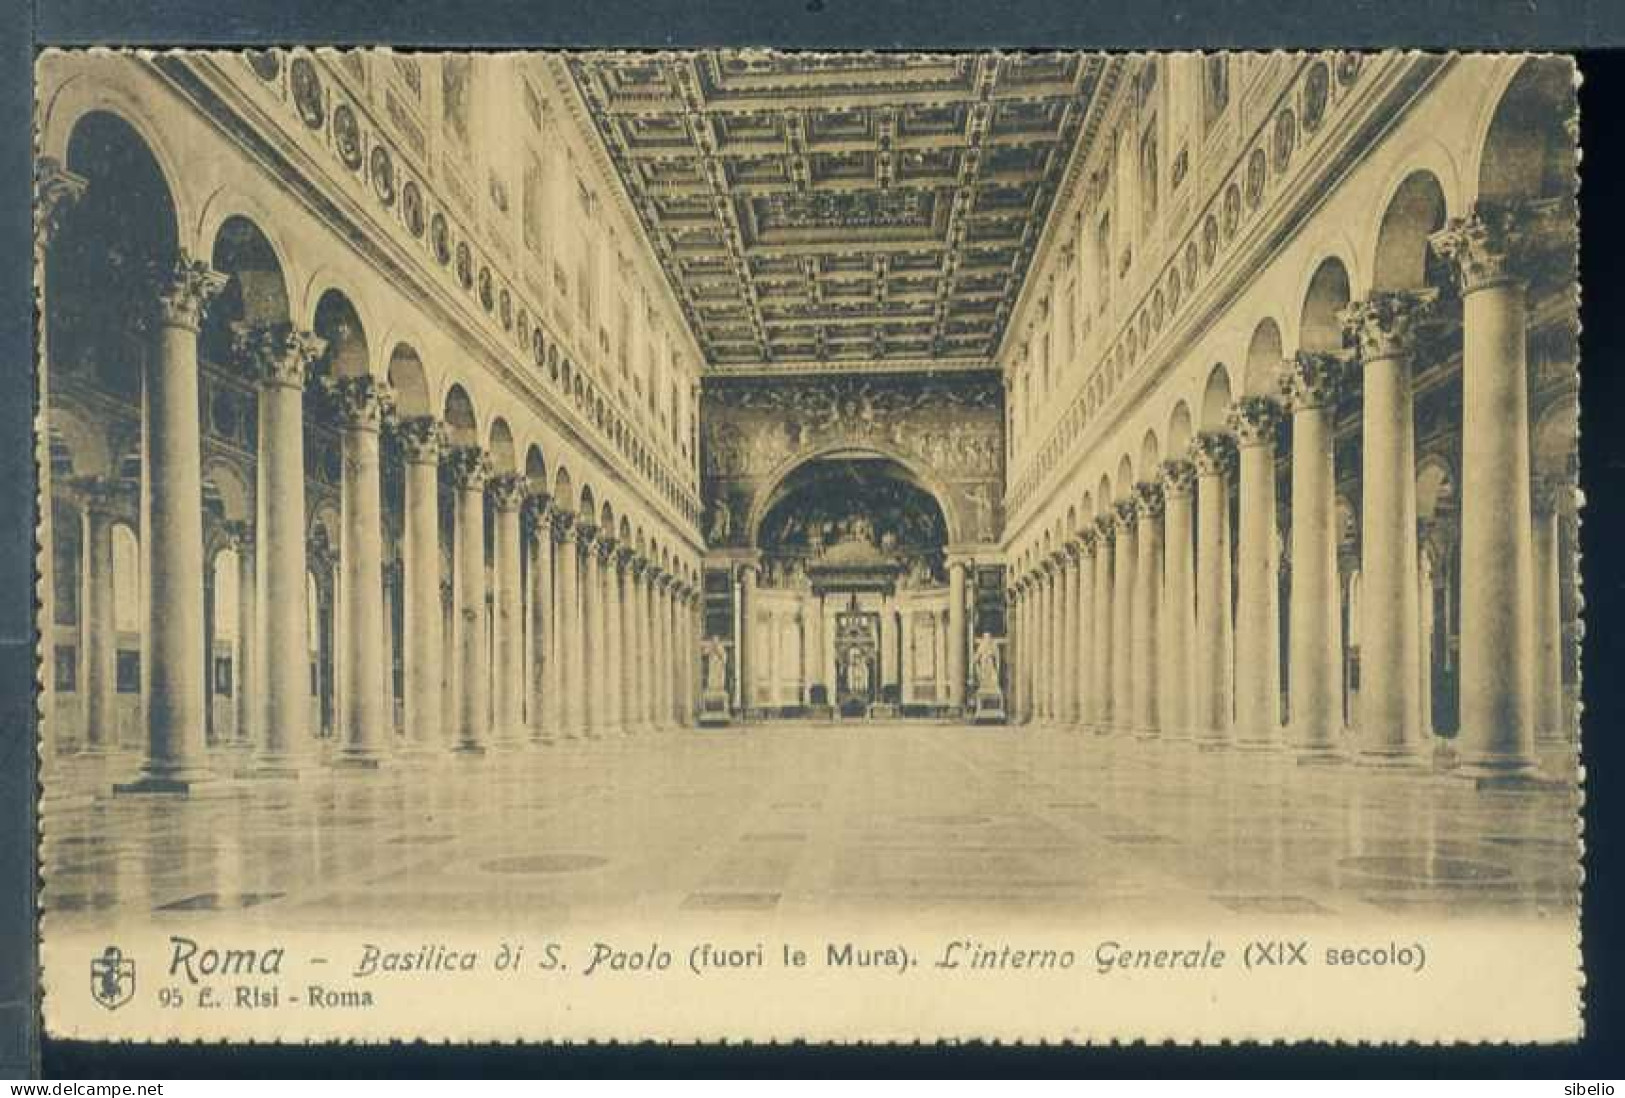 Roma - dieci cartoline antiche - rif. 3